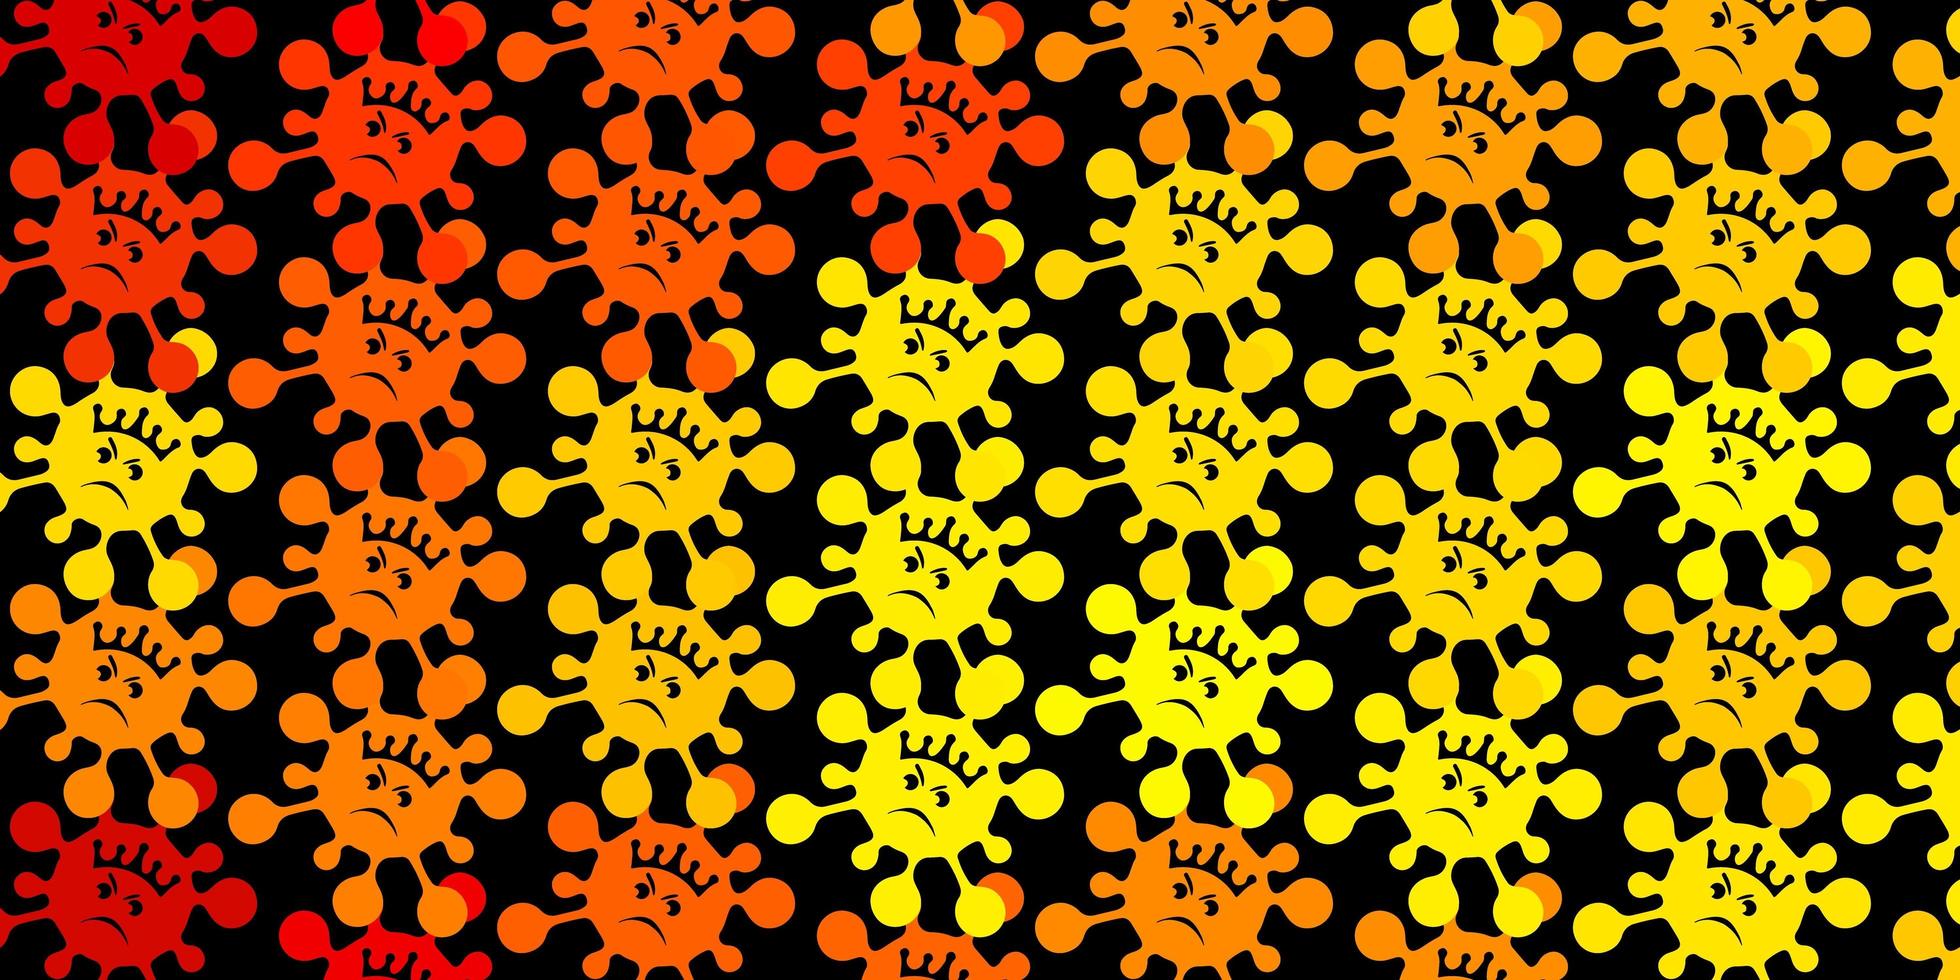 Patrón de vector amarillo oscuro con elementos de coronavirus.